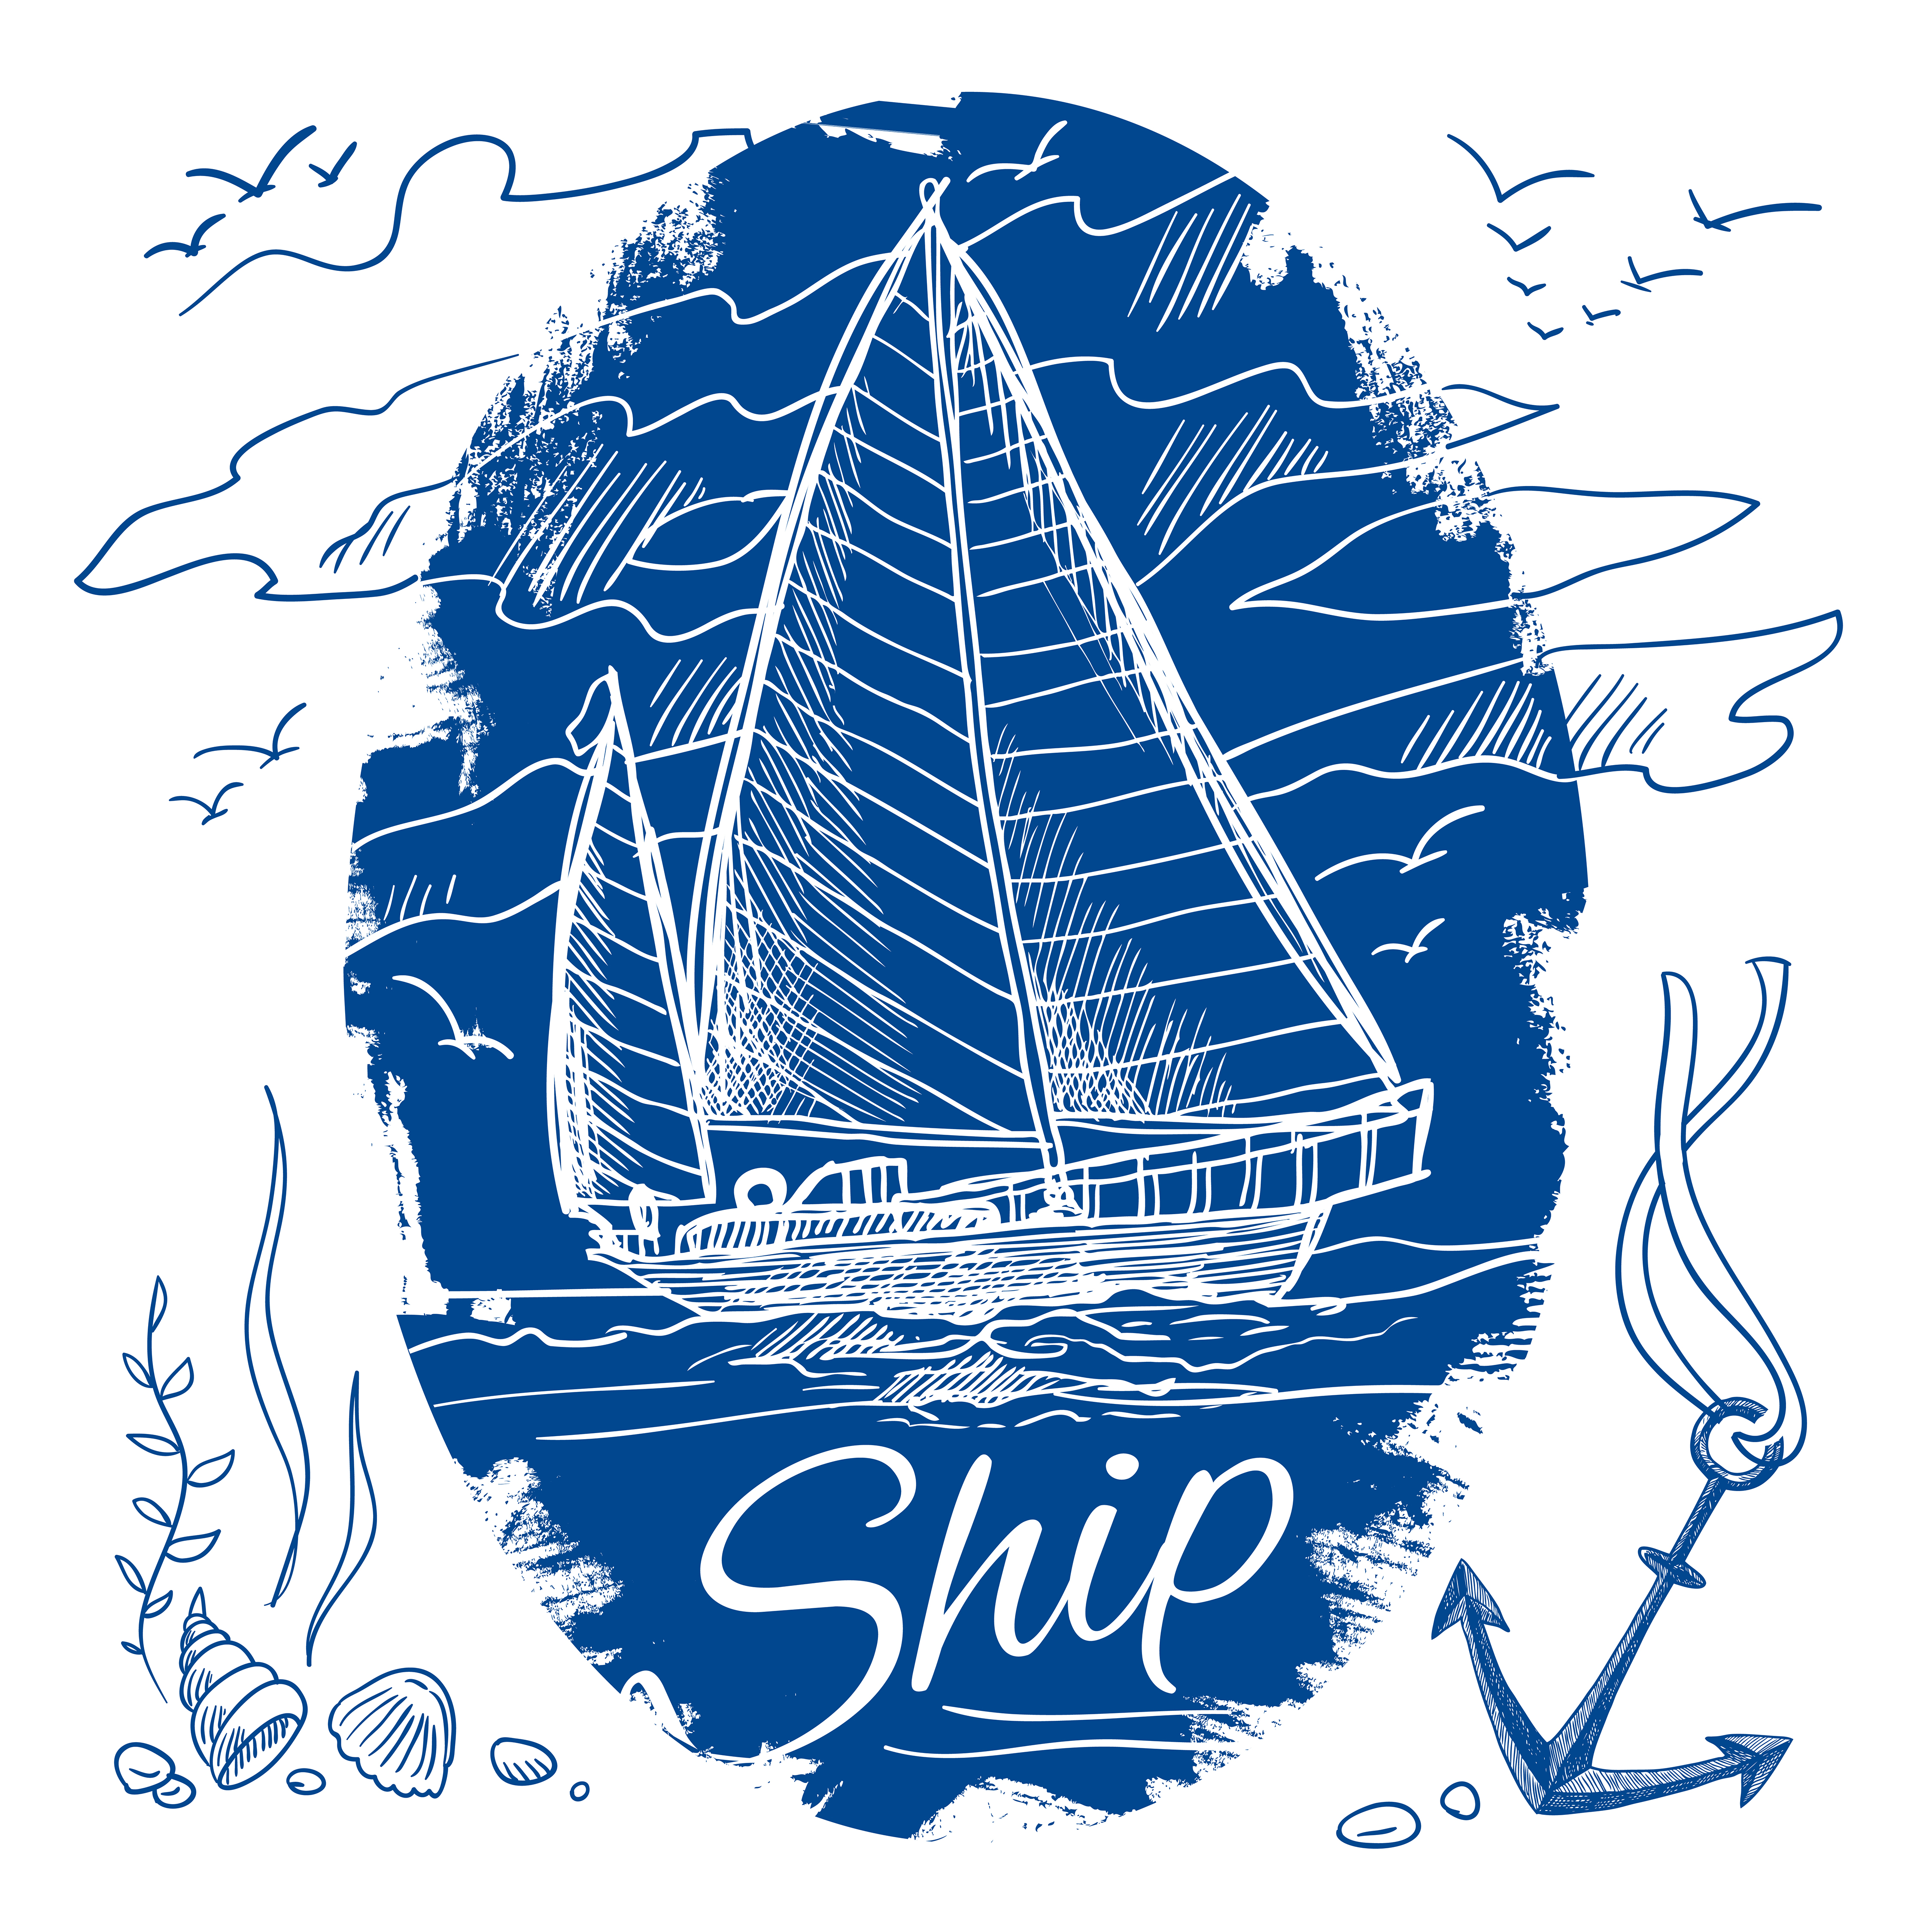 Download Nautical emblem with ship 443251 - Download Free Vectors, Clipart Graphics & Vector Art